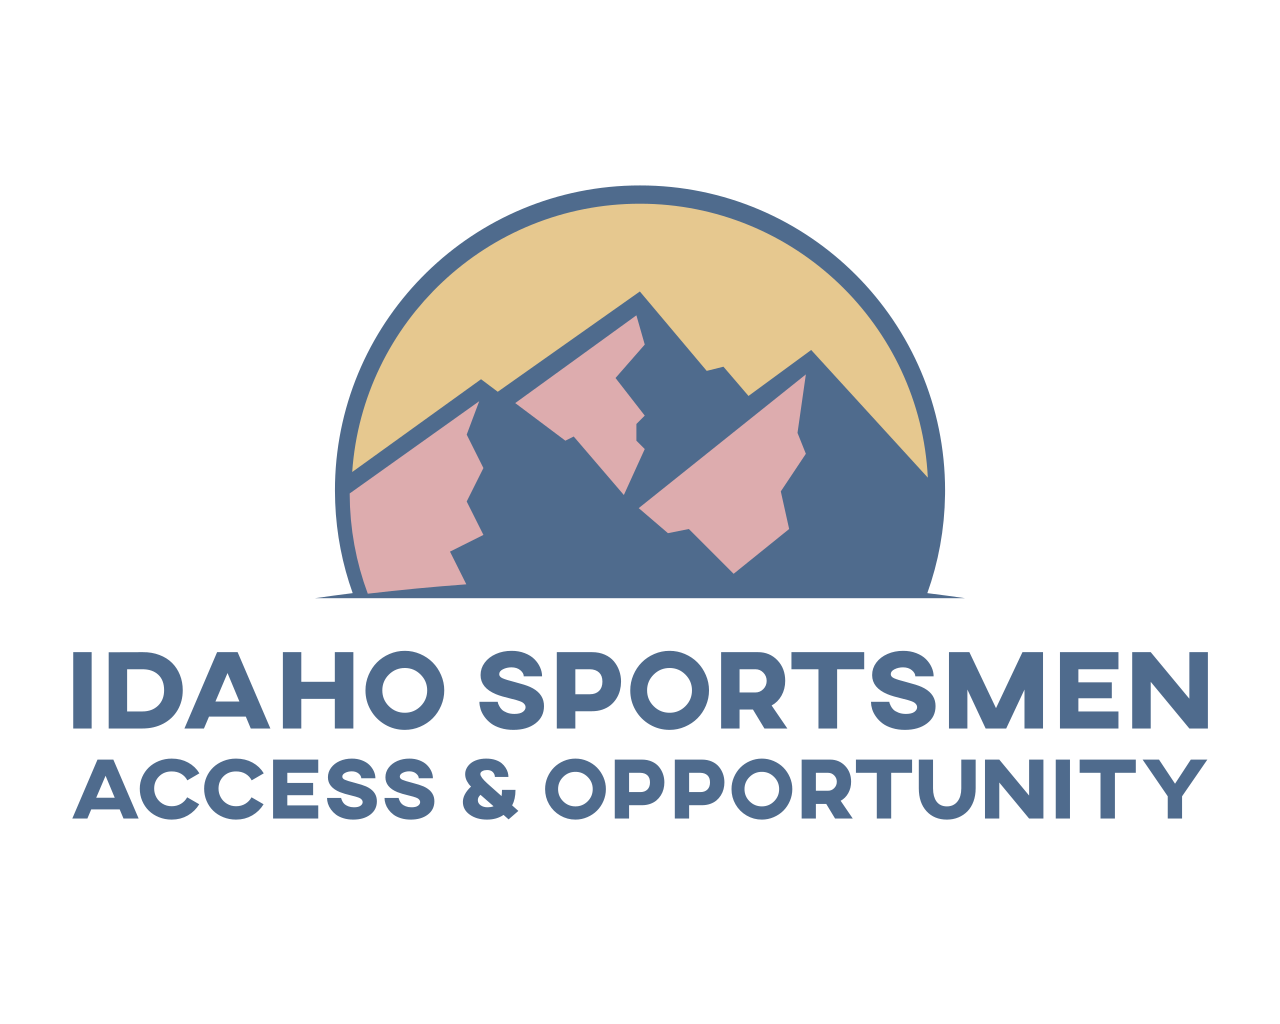 Idaho Sportsmen